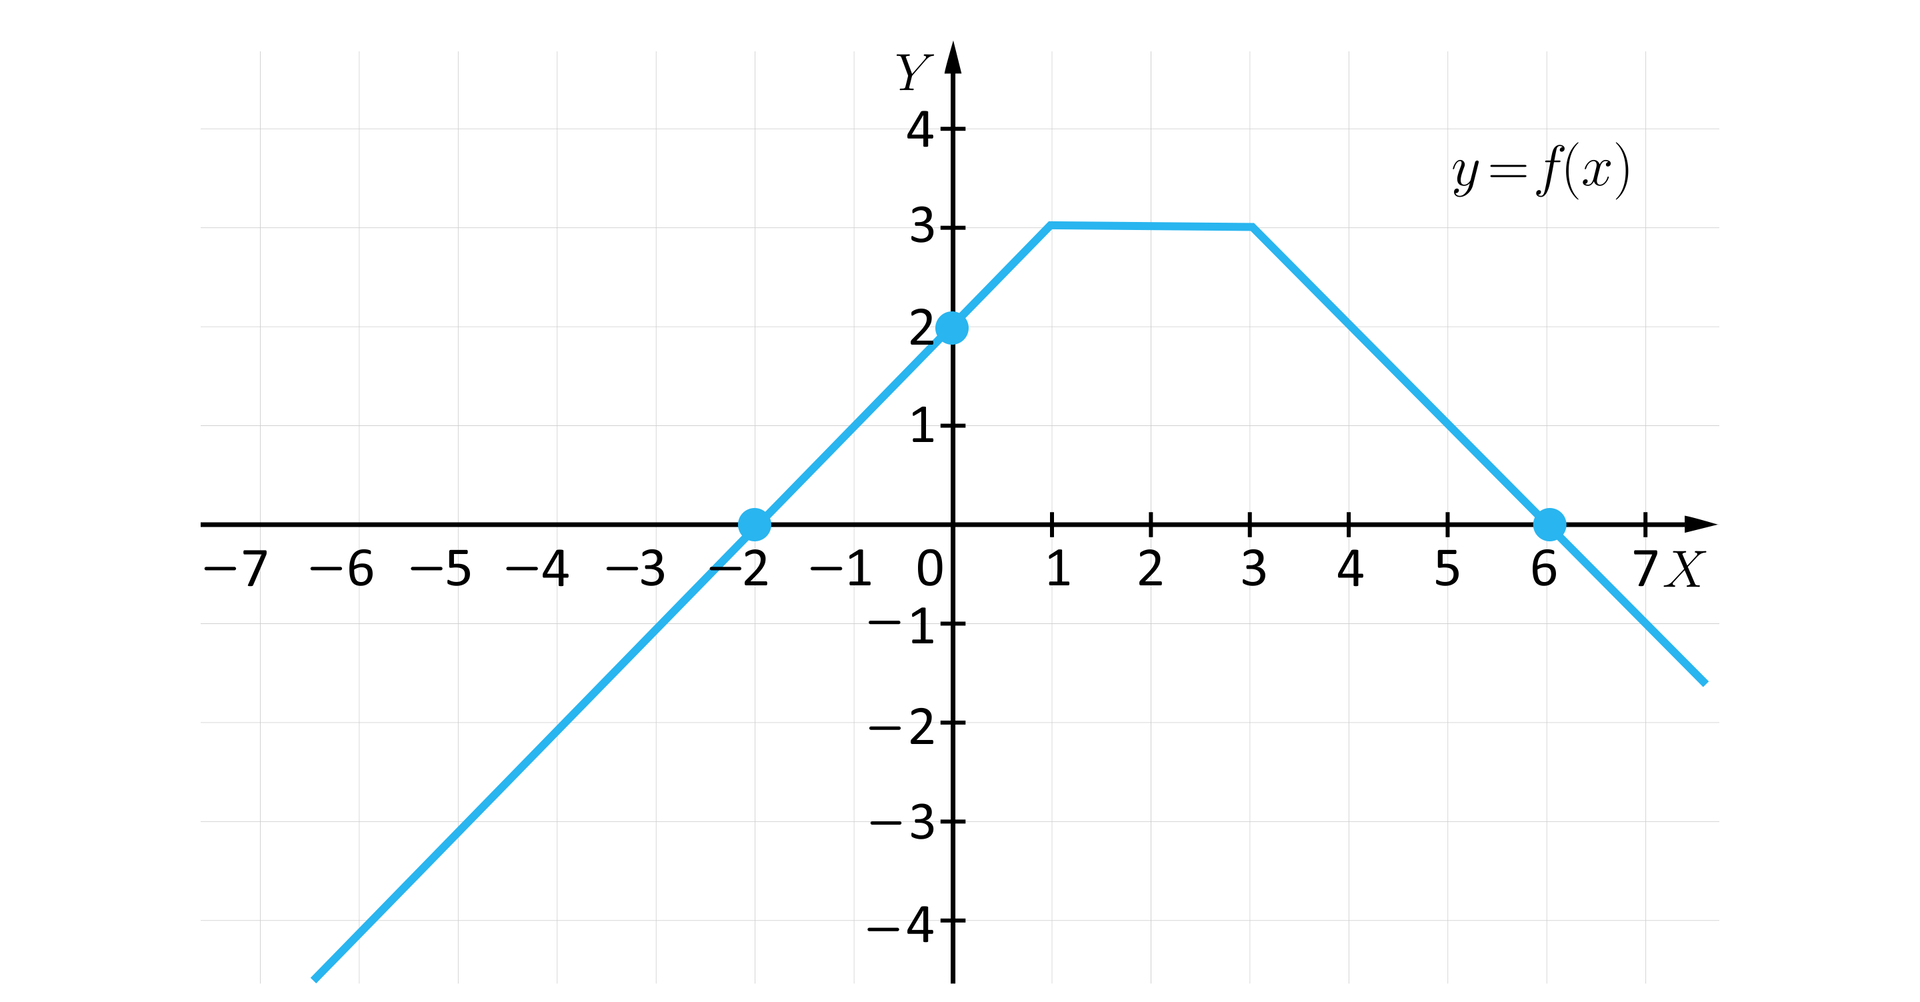 Ilustracja przedstawia układ współrzędnych z poziomą osią X od minus siedmiu do siedmiu oraz z pionową osią Y od minus czterech do czterech. Na płaszczyźnie narysowano wykres funkcji opisanej trzema wzorami na trzech różnych przedziałach. Od minus nieskończoności do jeden funkcja jest rosnąca i opisuje ją wzór y równa się x odjąć dwa. Wykresem na tym przedziale jest ukośna półprosta o końcu w punkcie 1;3. Wykres funkcji przechodzi w tej części przez wyróżnione punkty -2;0 oraz 0;2. Druga część wykresu znajduje się w przedziale od jeden do trzy. W tym przedziale składową wykresu jest poziomy odcinek o końcach 1;3 oraz 3;3, tu funkcja jest stała i jest opisana wzorem y równa się  trzy. W trzecim przedziale, czyli od trzech do plus nieskończoności, funkcja jest malejąca i opisuje ją wzór y równa się 6 odjąć x.  W tym przedziale składowa wykres jest ukośną półprostą o końcu w punkcie 3;3. Półprosta przechodzi przez wyróżniony punkt 6;0.